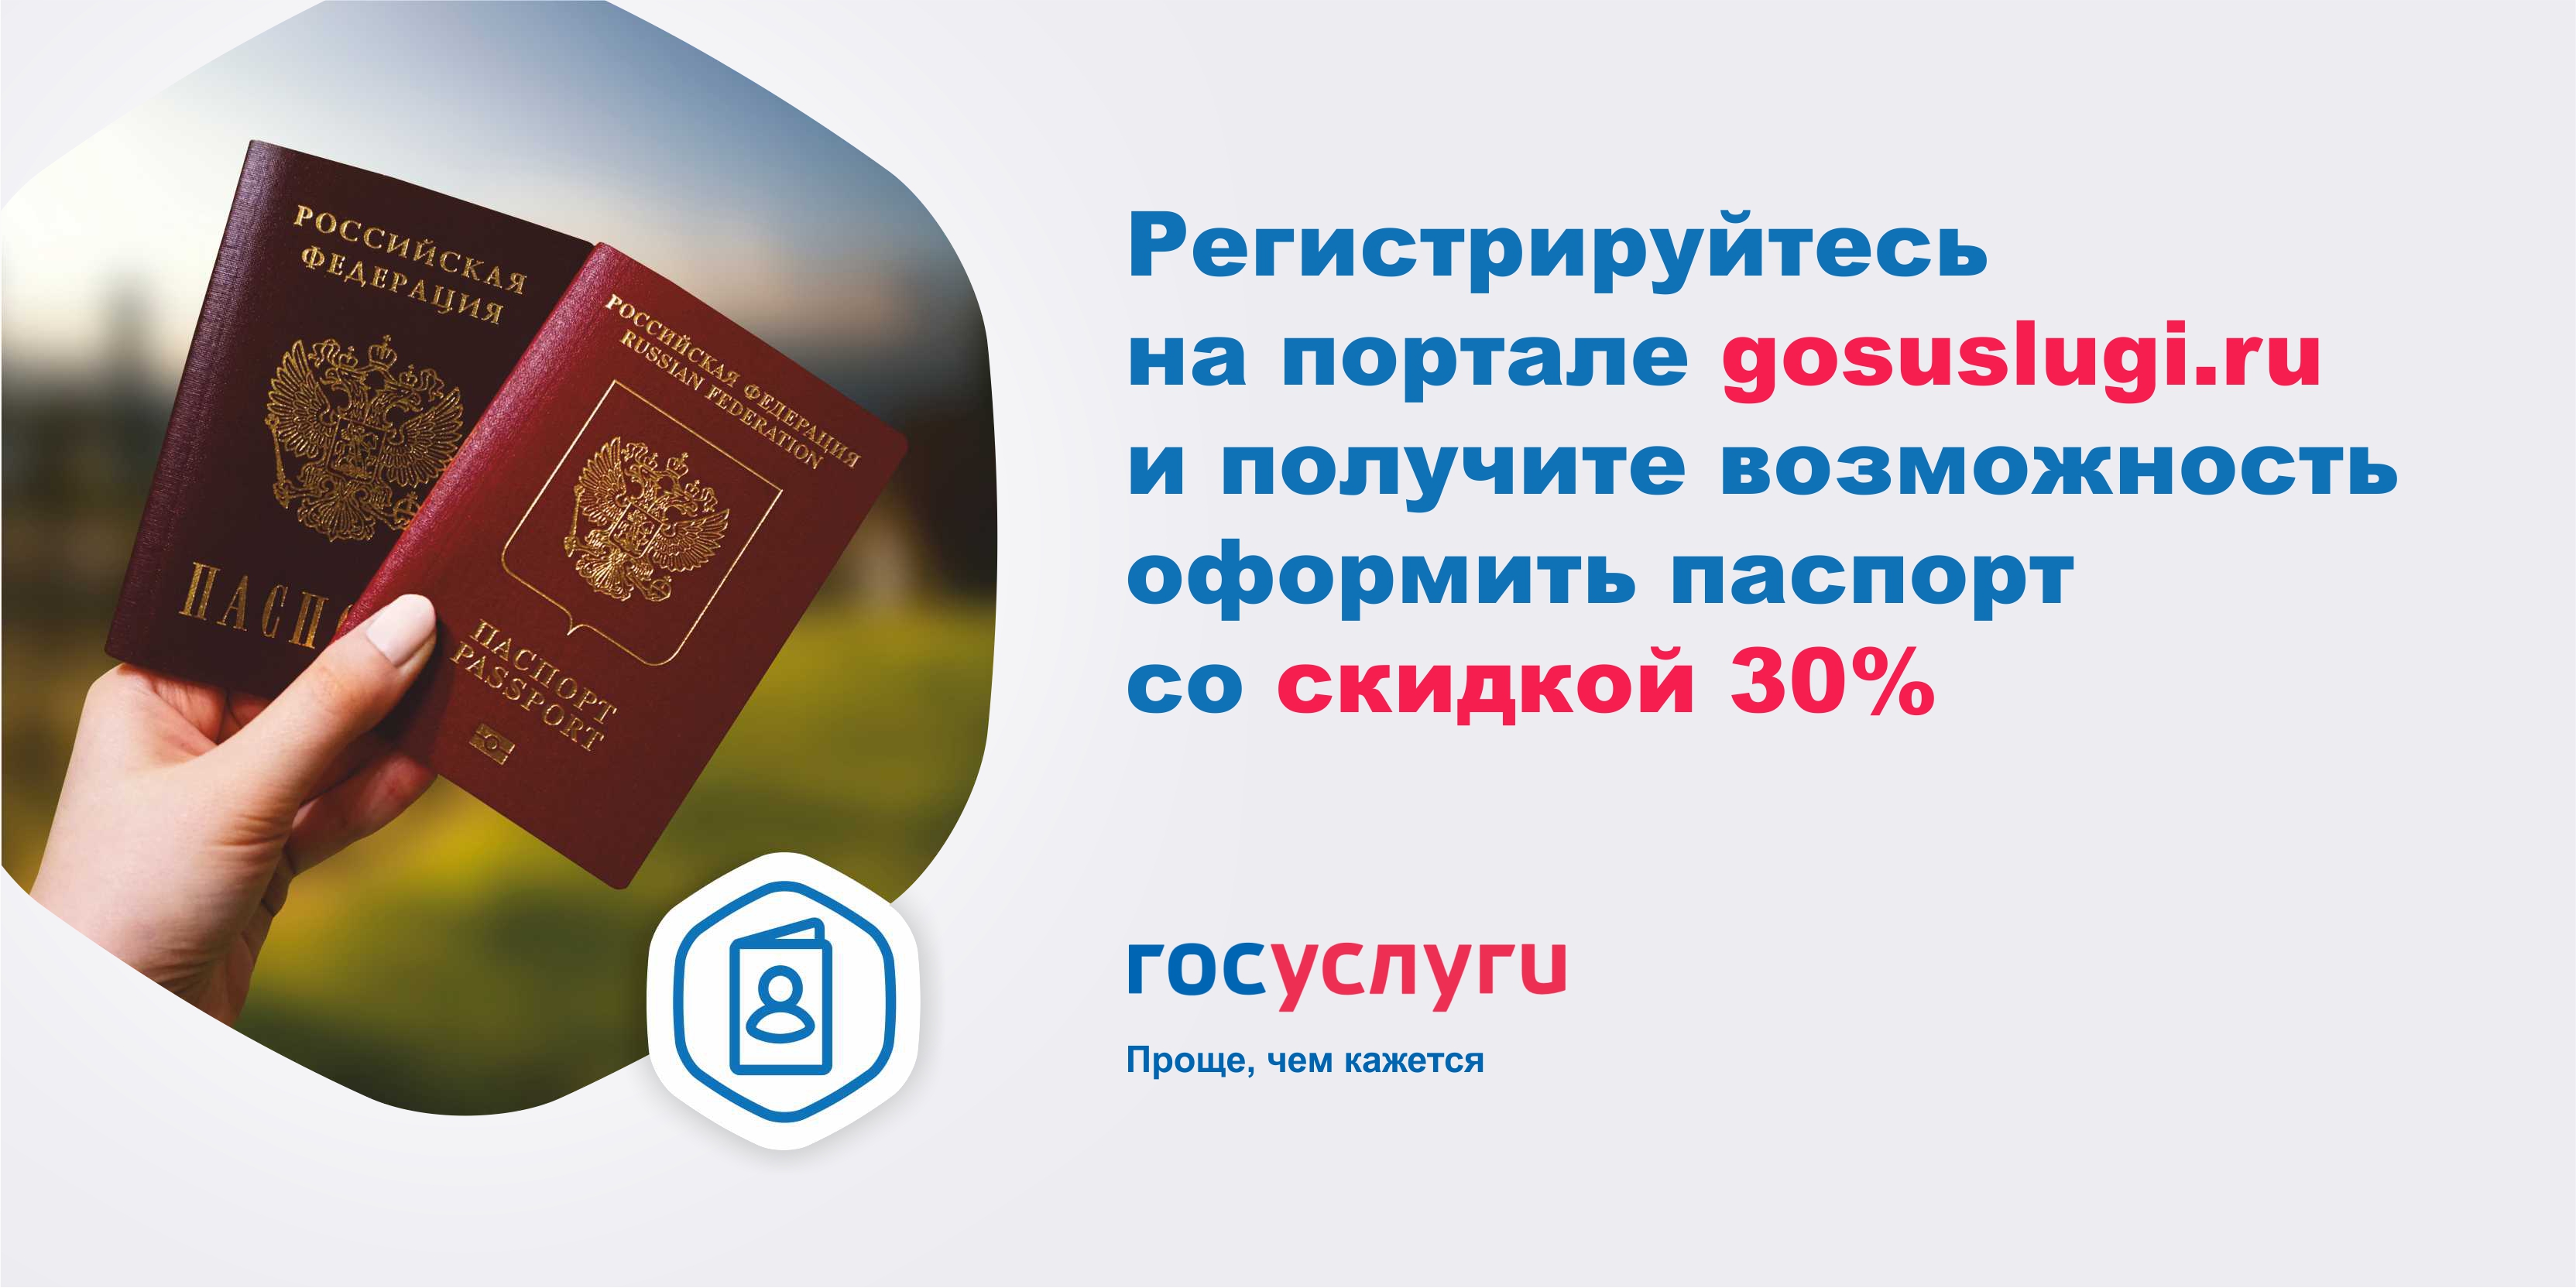 Оформление паспорта через портал gosuslugi.ru